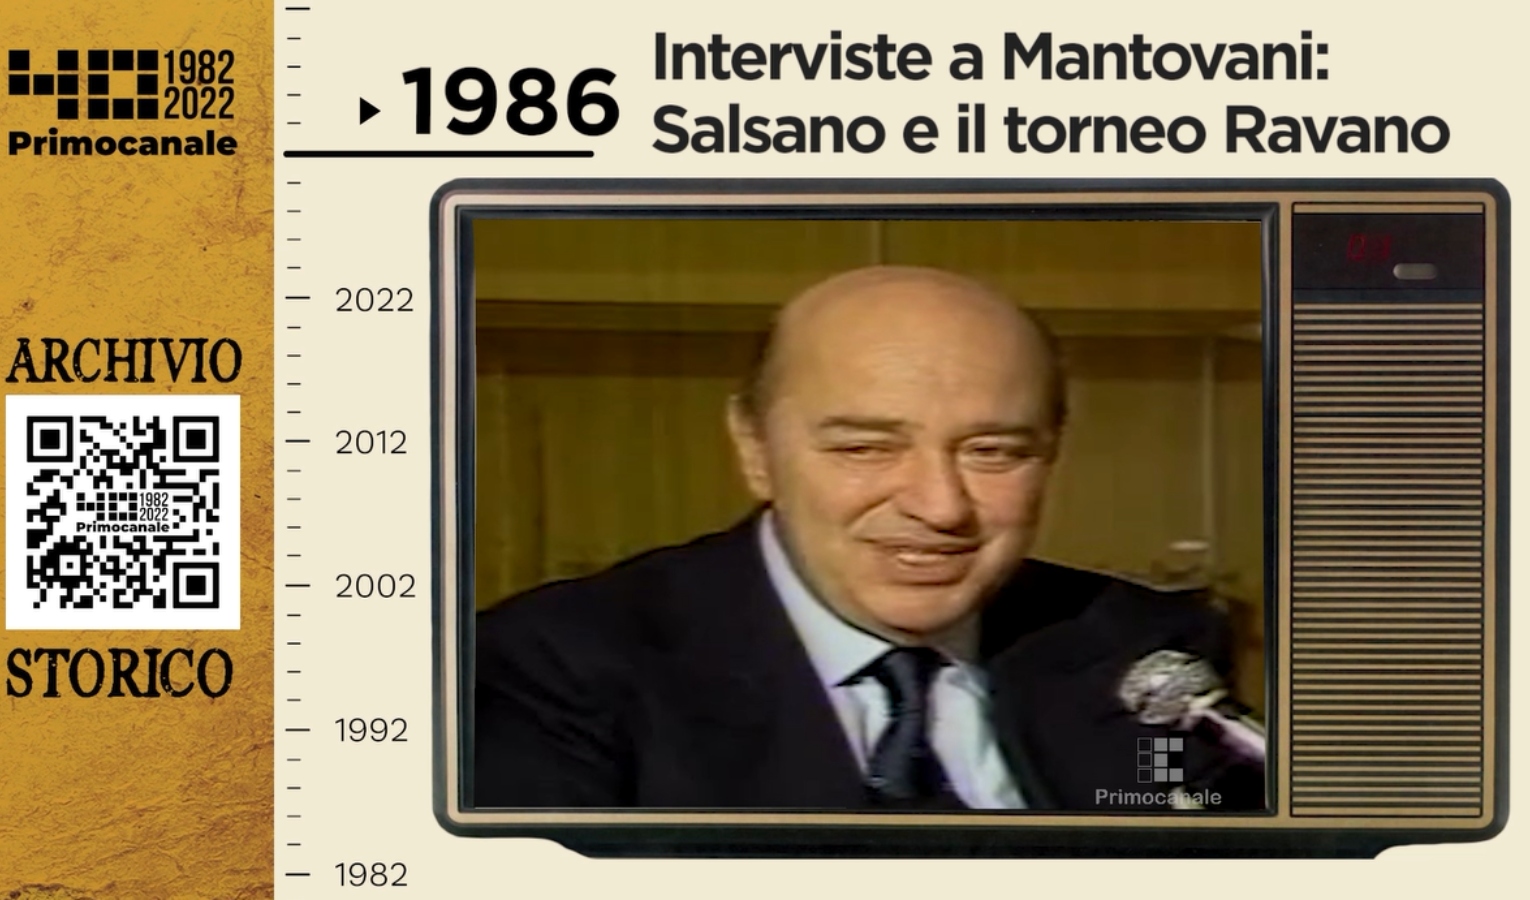 Dall'archivio storico di Primocanale, 1986: Mantovani, Salsano e il torneo Ravano